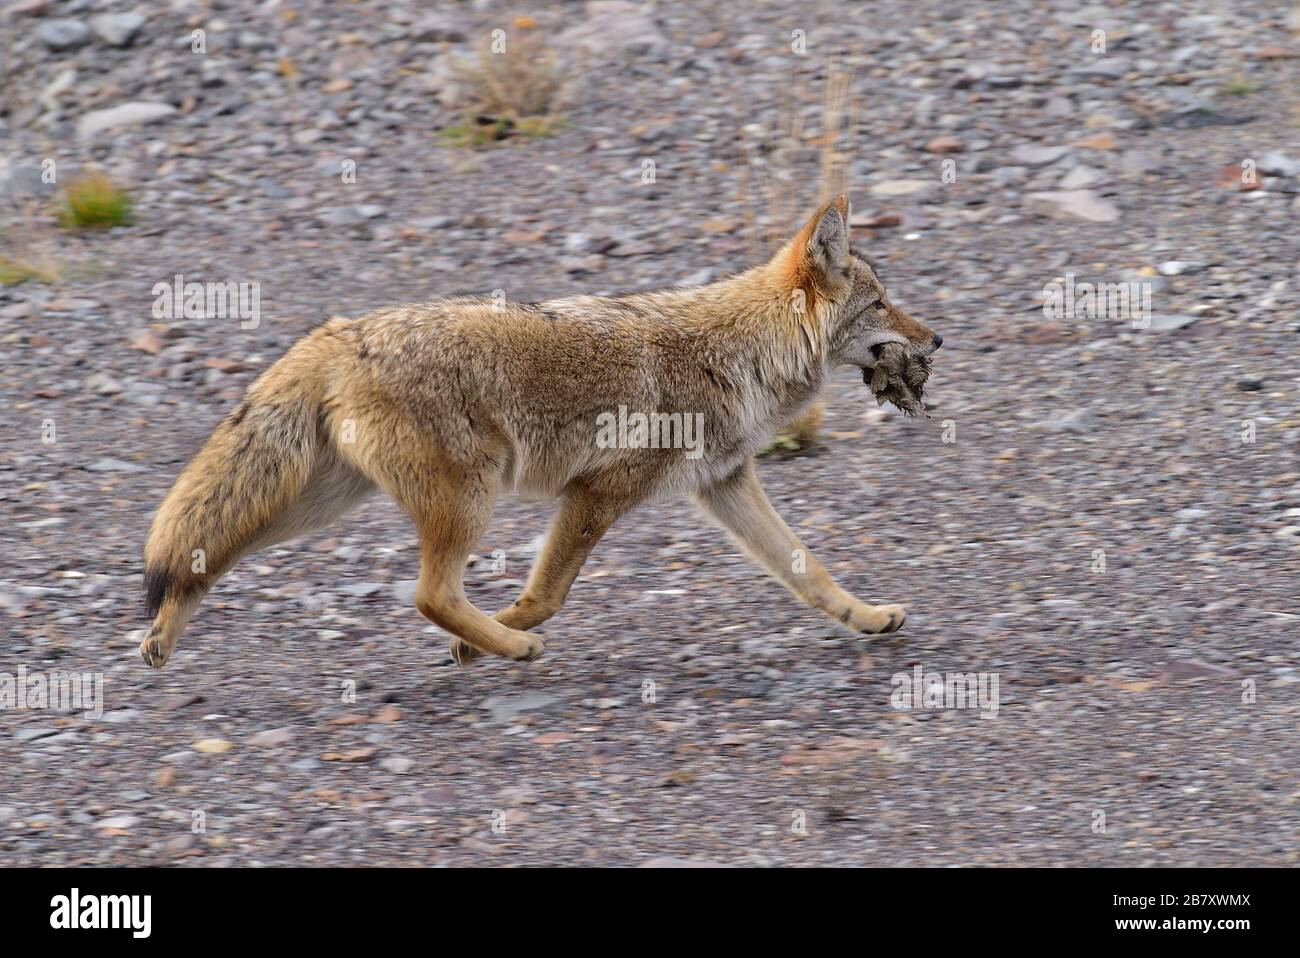 Un coyote sauvage Canis latrans; courir sur un terrain rocheux avec une bouche savoureuse de quelque chose qu'il a pris dans les régions rurales de l'Alberta Canada Banque D'Images